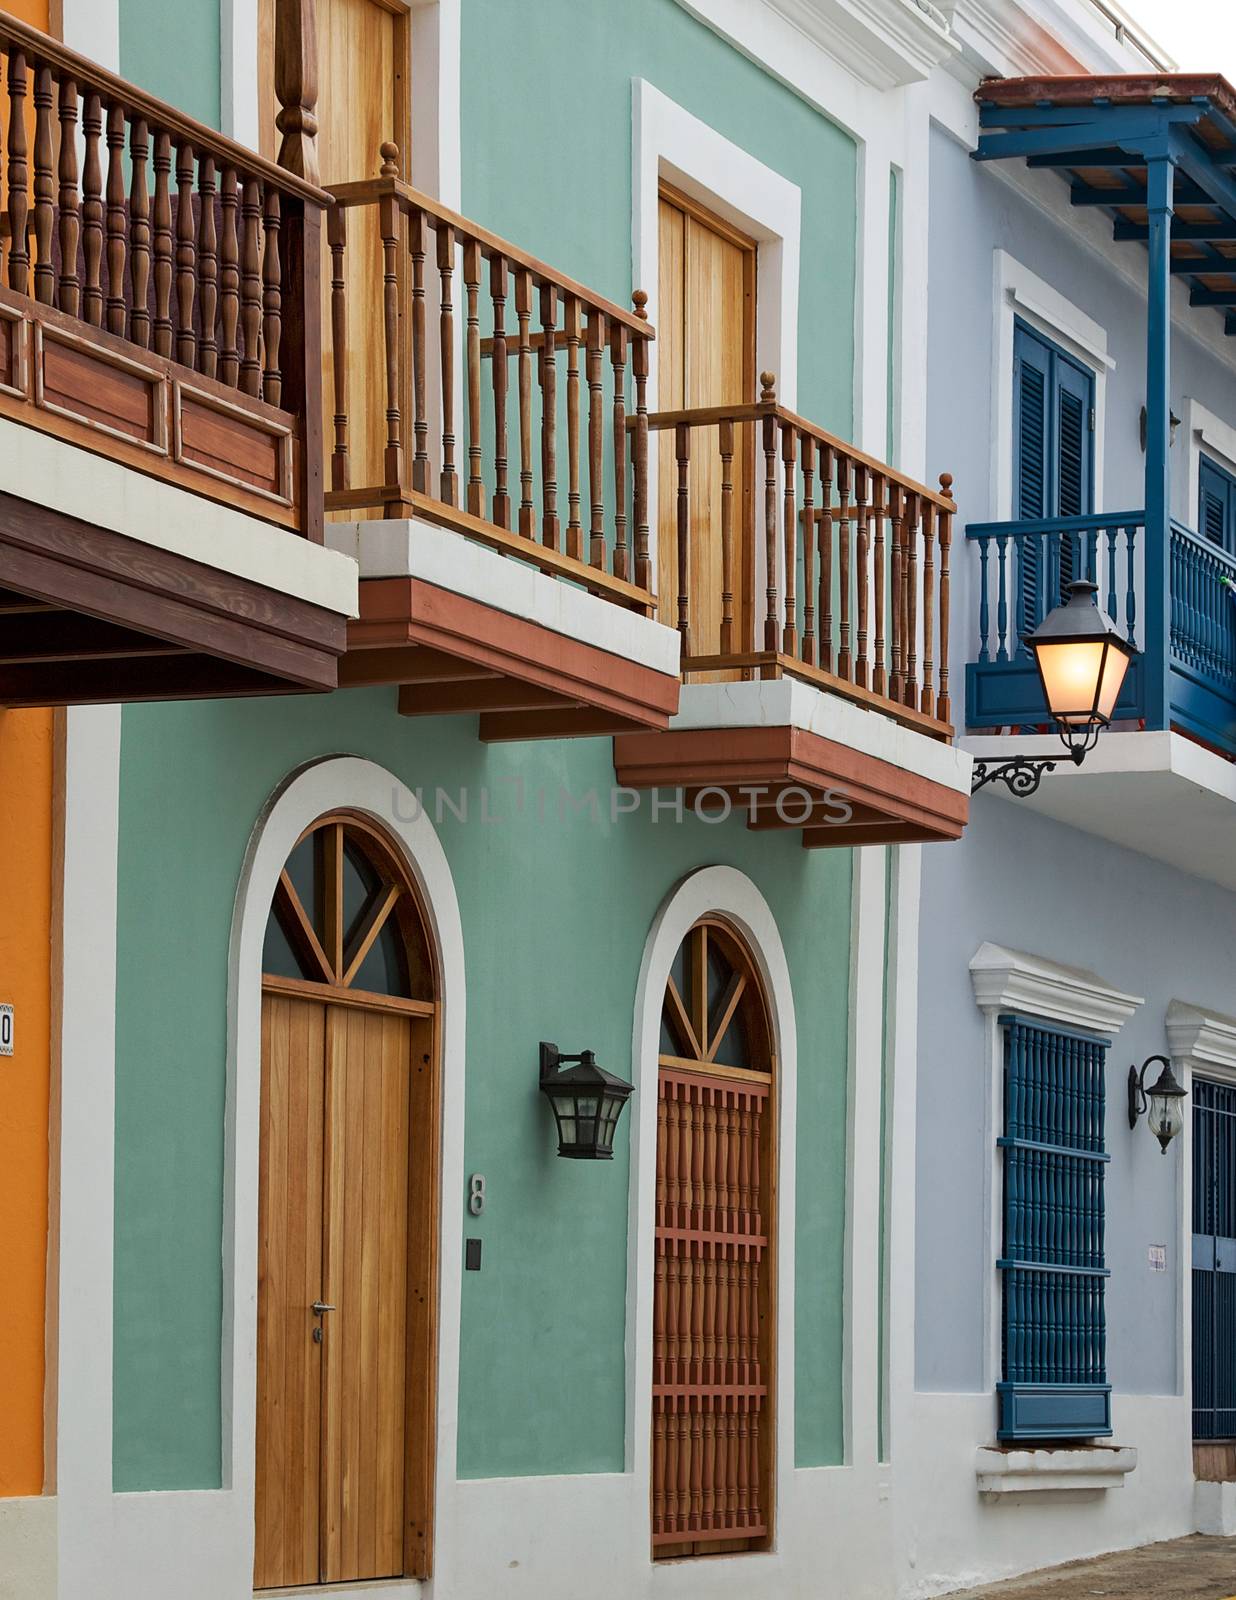 Homes in Old San Juan by teacherdad48@yahoo.com